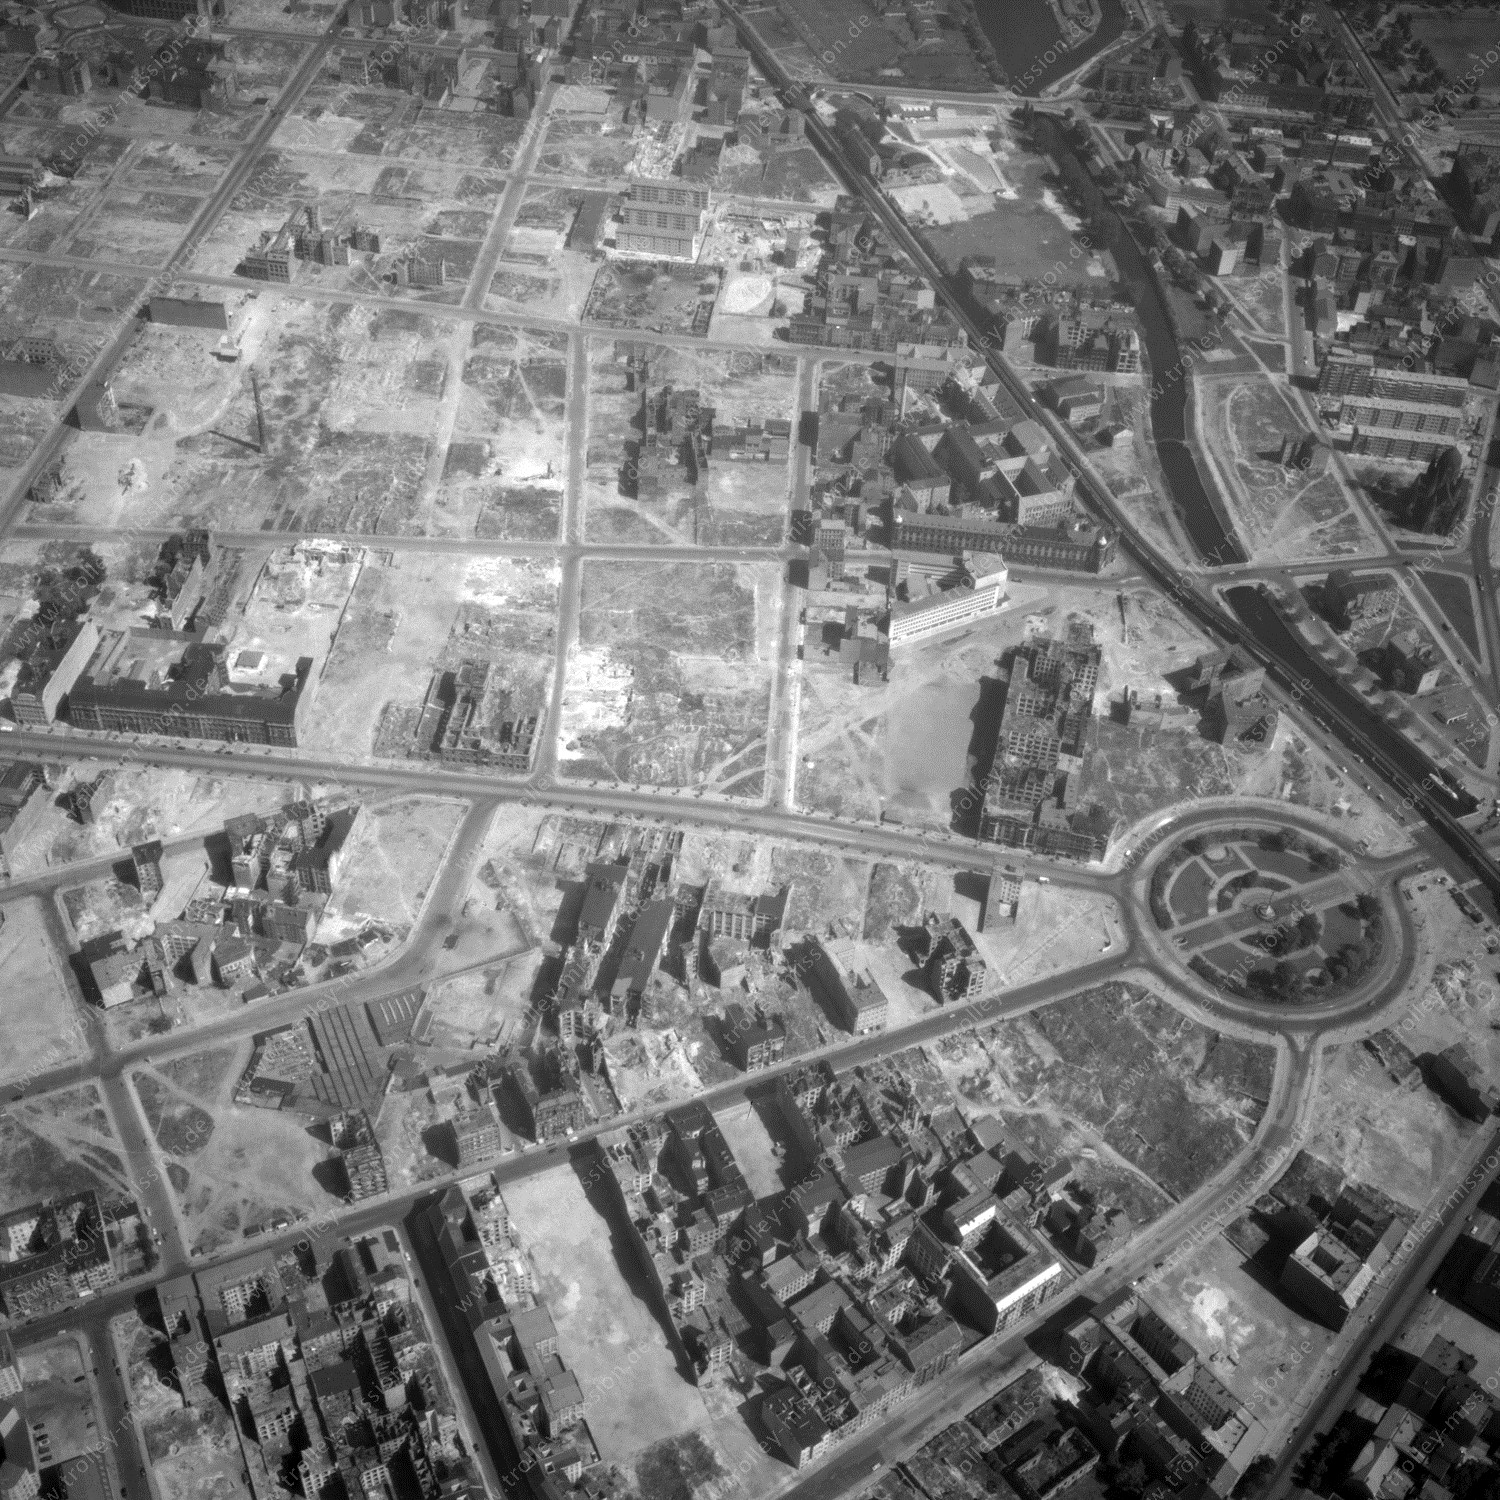 Alte Fotos und Luftbilder von Berlin - Luftbildaufnahme Nr. 08 - Historische Luftaufnahmen von West-Berlin aus dem Jahr 1954 - Flugstrecke Juliett